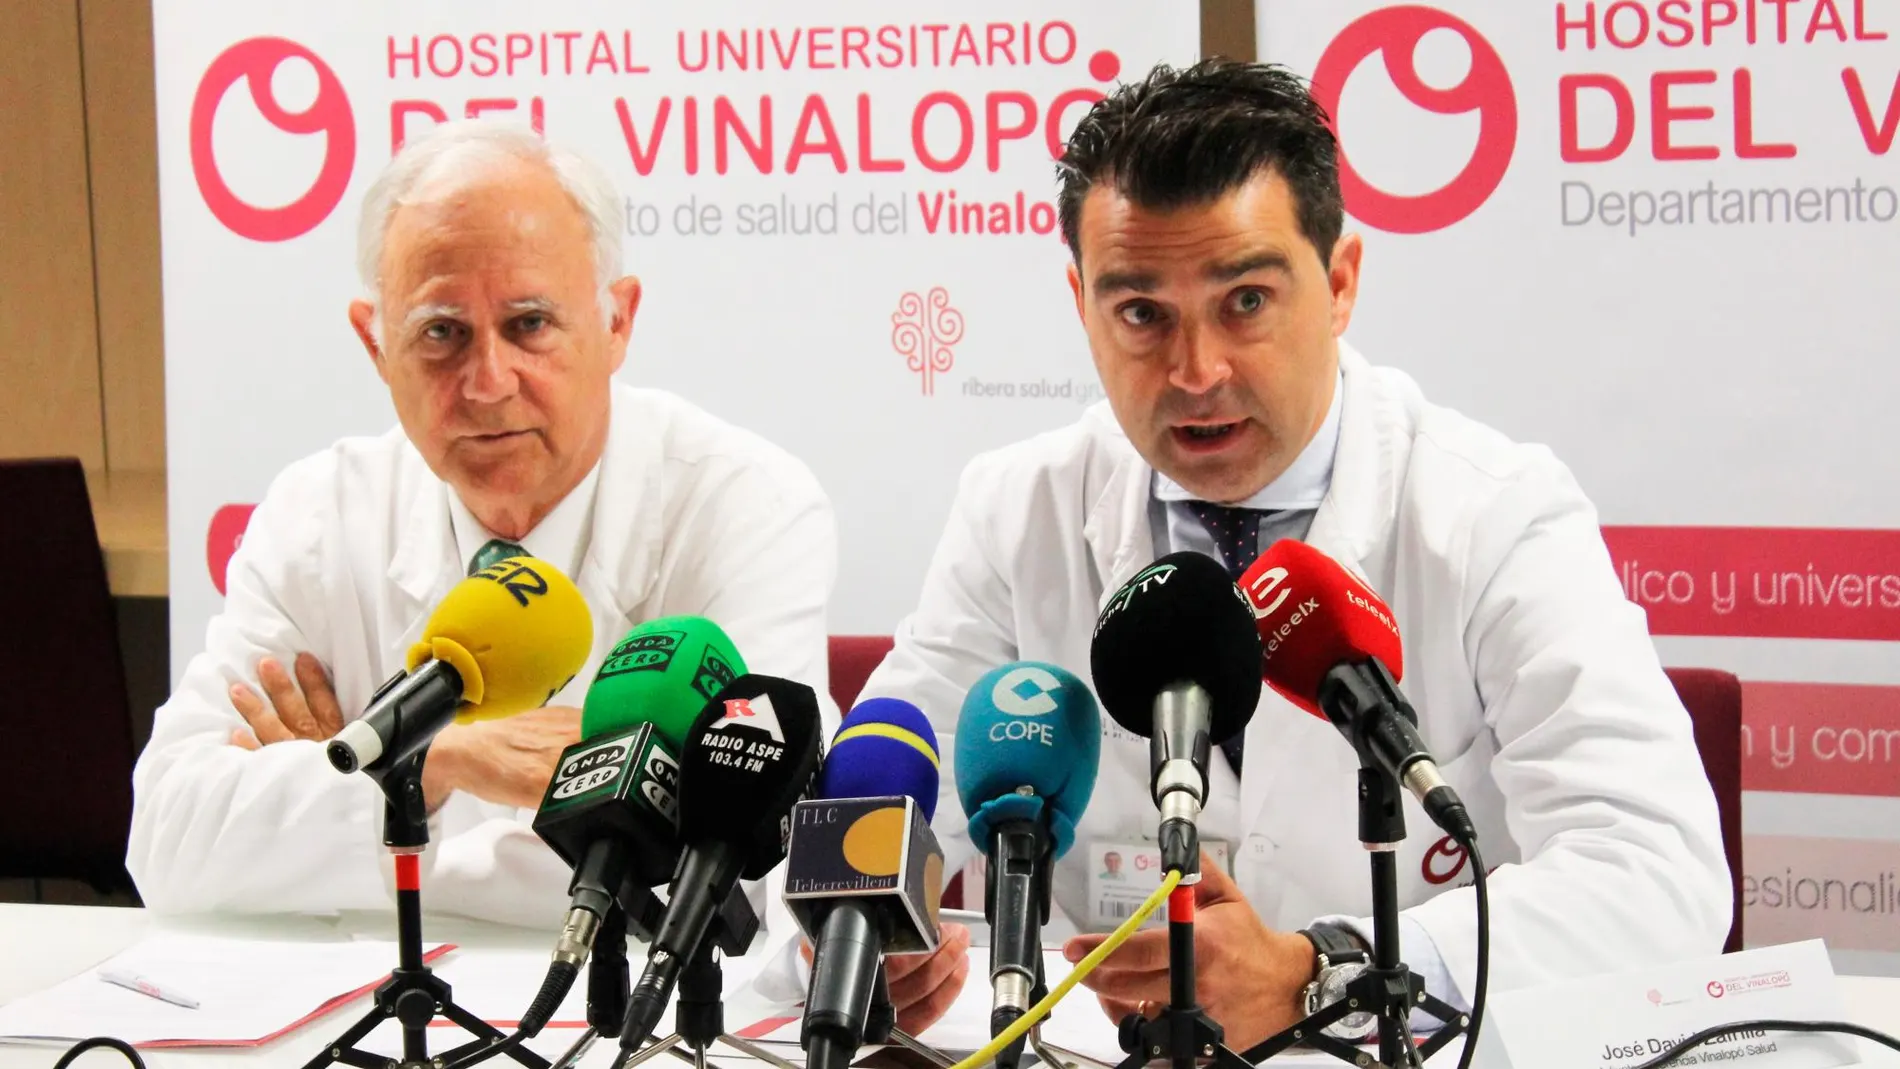 En la gráfica, los doctores Ramón Navarro y José David Zafrilla en el momento de la rueda de prensa en la que explicaron los logros y avances del Hospital del Vinalopó, gestionado por el Grupo Ribera Salud en Elche